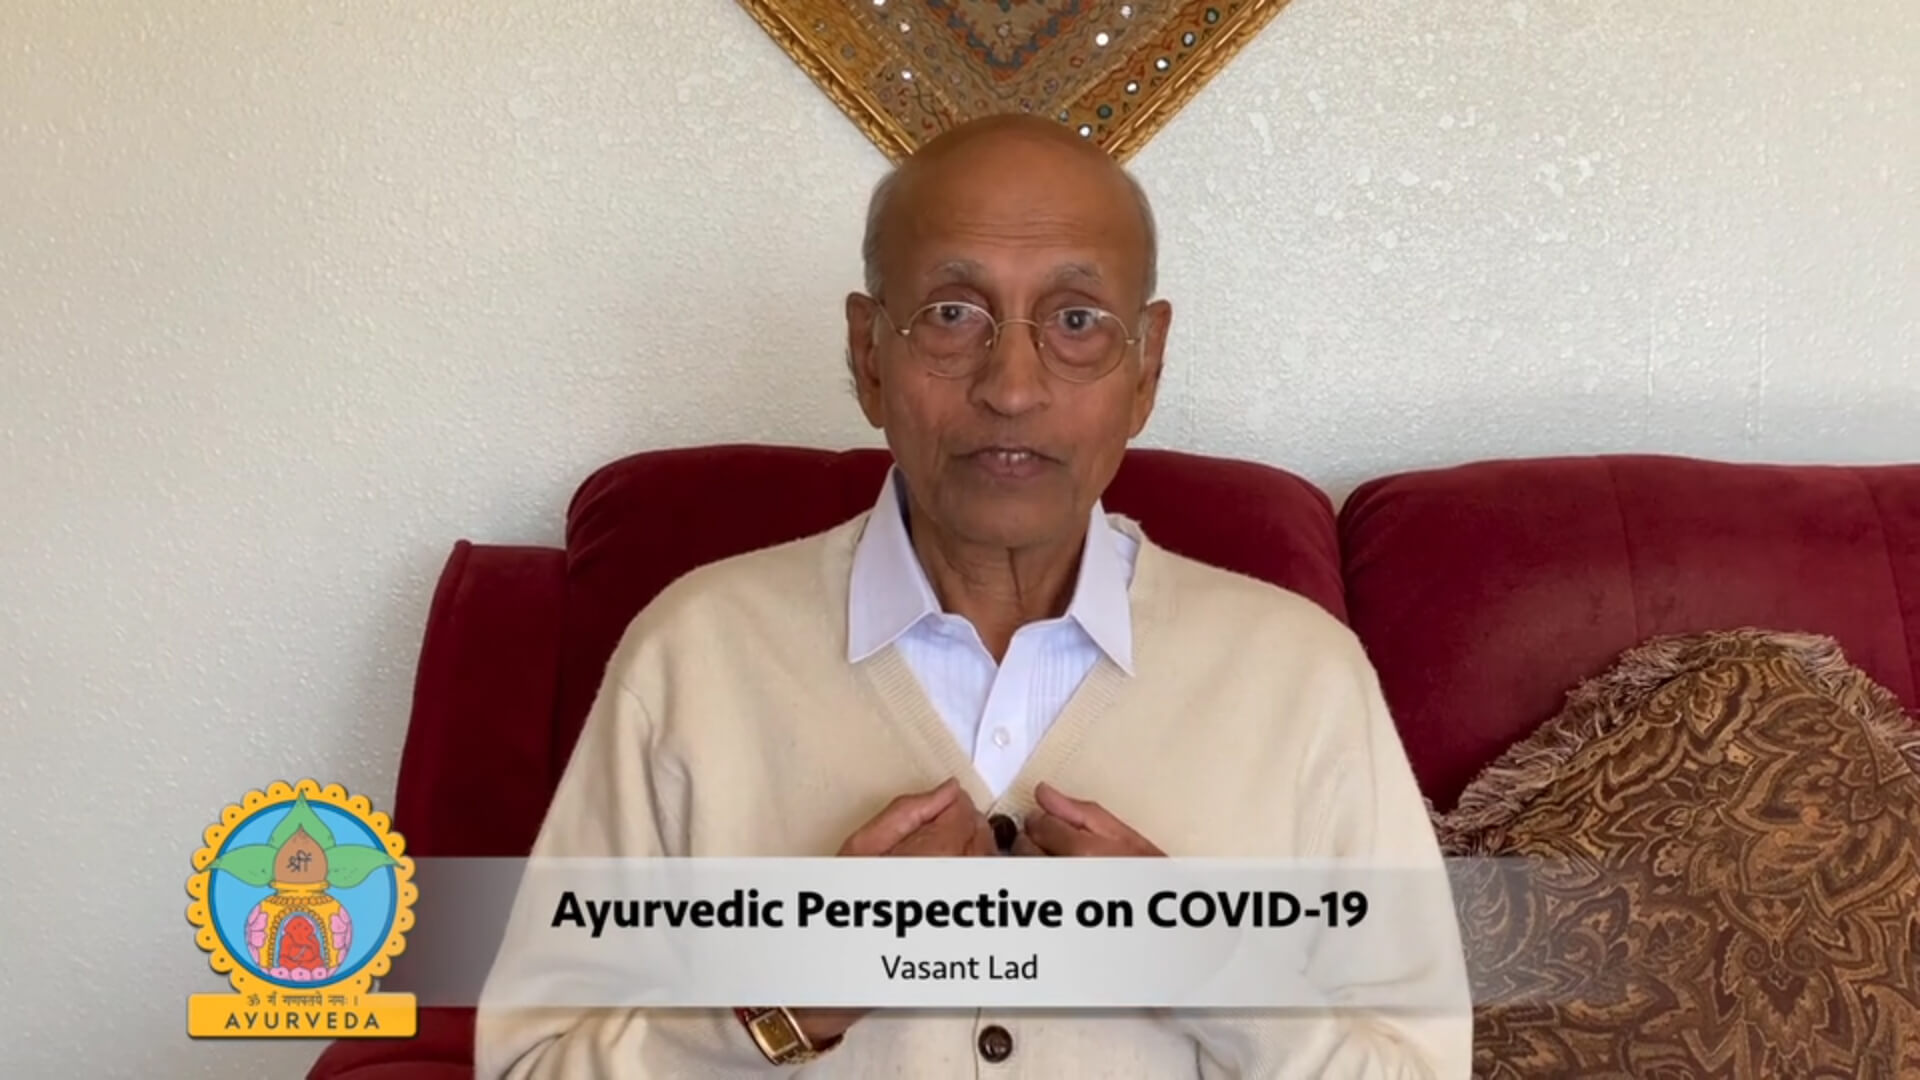 Dr. Vasant Lad gibt in einer Videonachricht Tipps für Gesundheit während der Corona-Pandemie